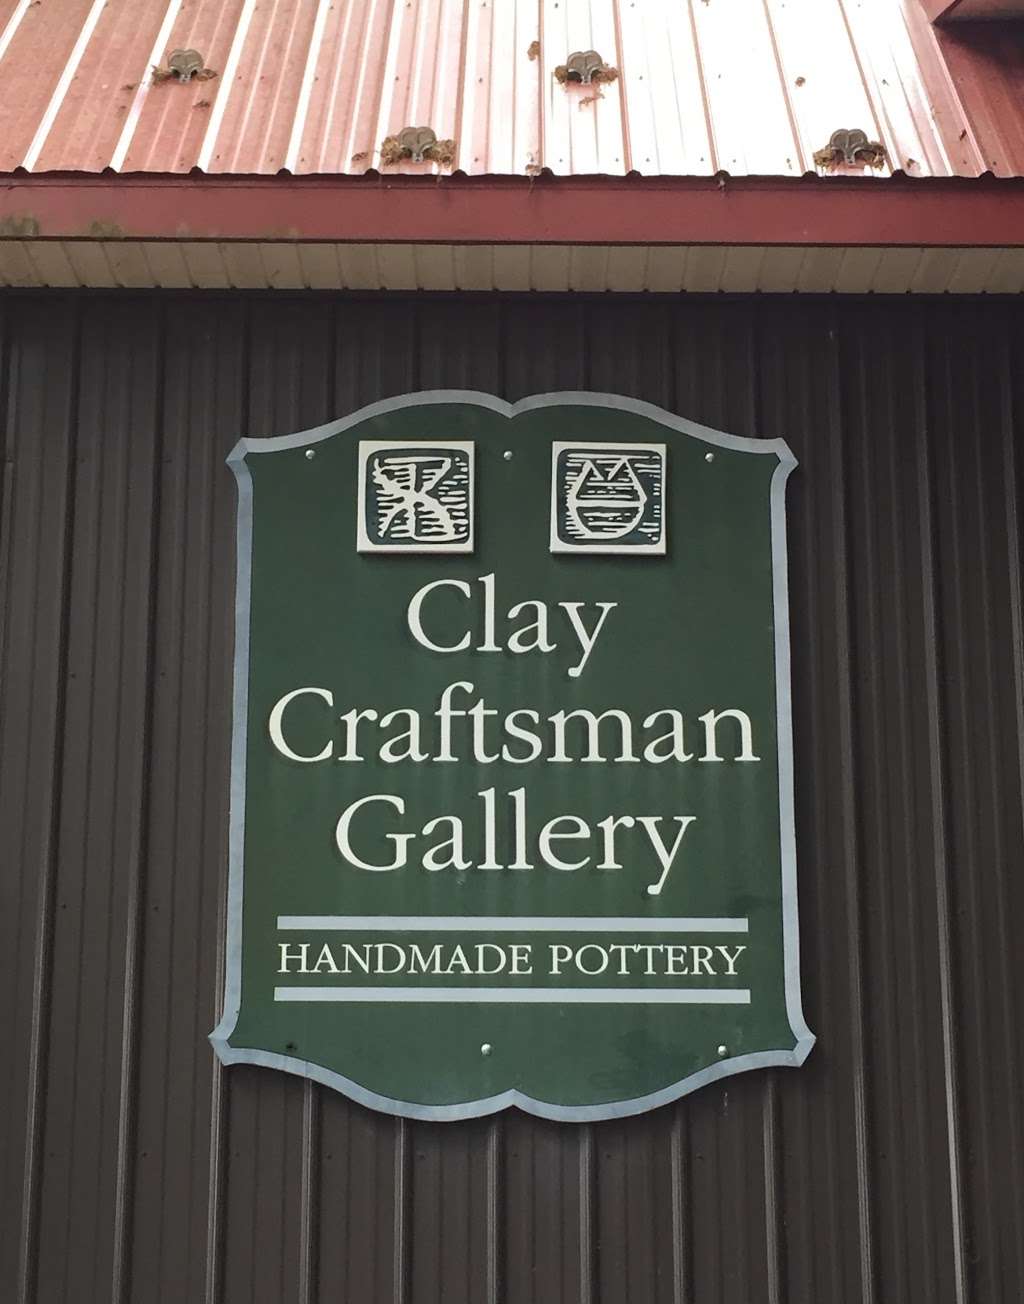 Clay Craftsman Gallery | 686 Barts Church Rd, Hanover, PA 17331 | Phone: (717) 359-9458